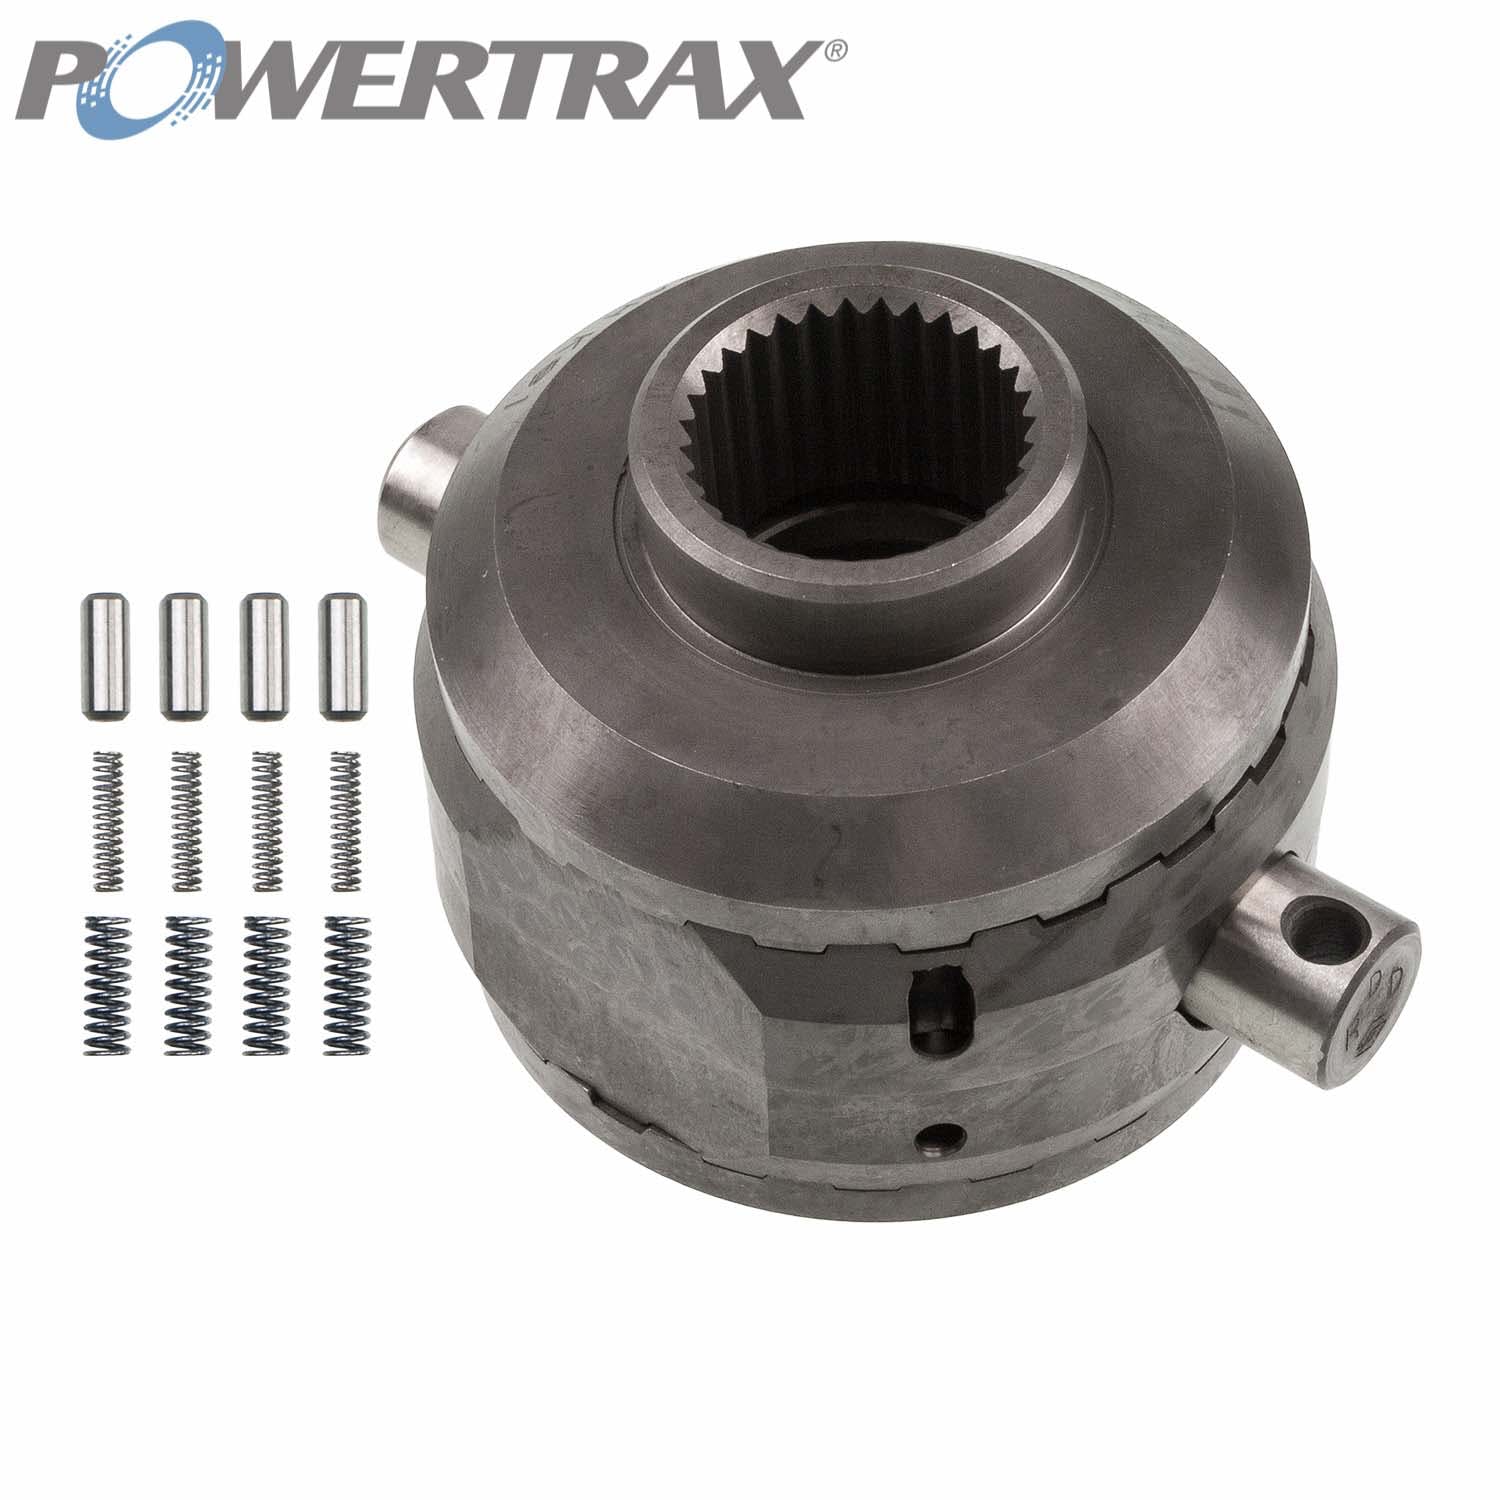 PowerTrax 1821-LR Lock Right Locker